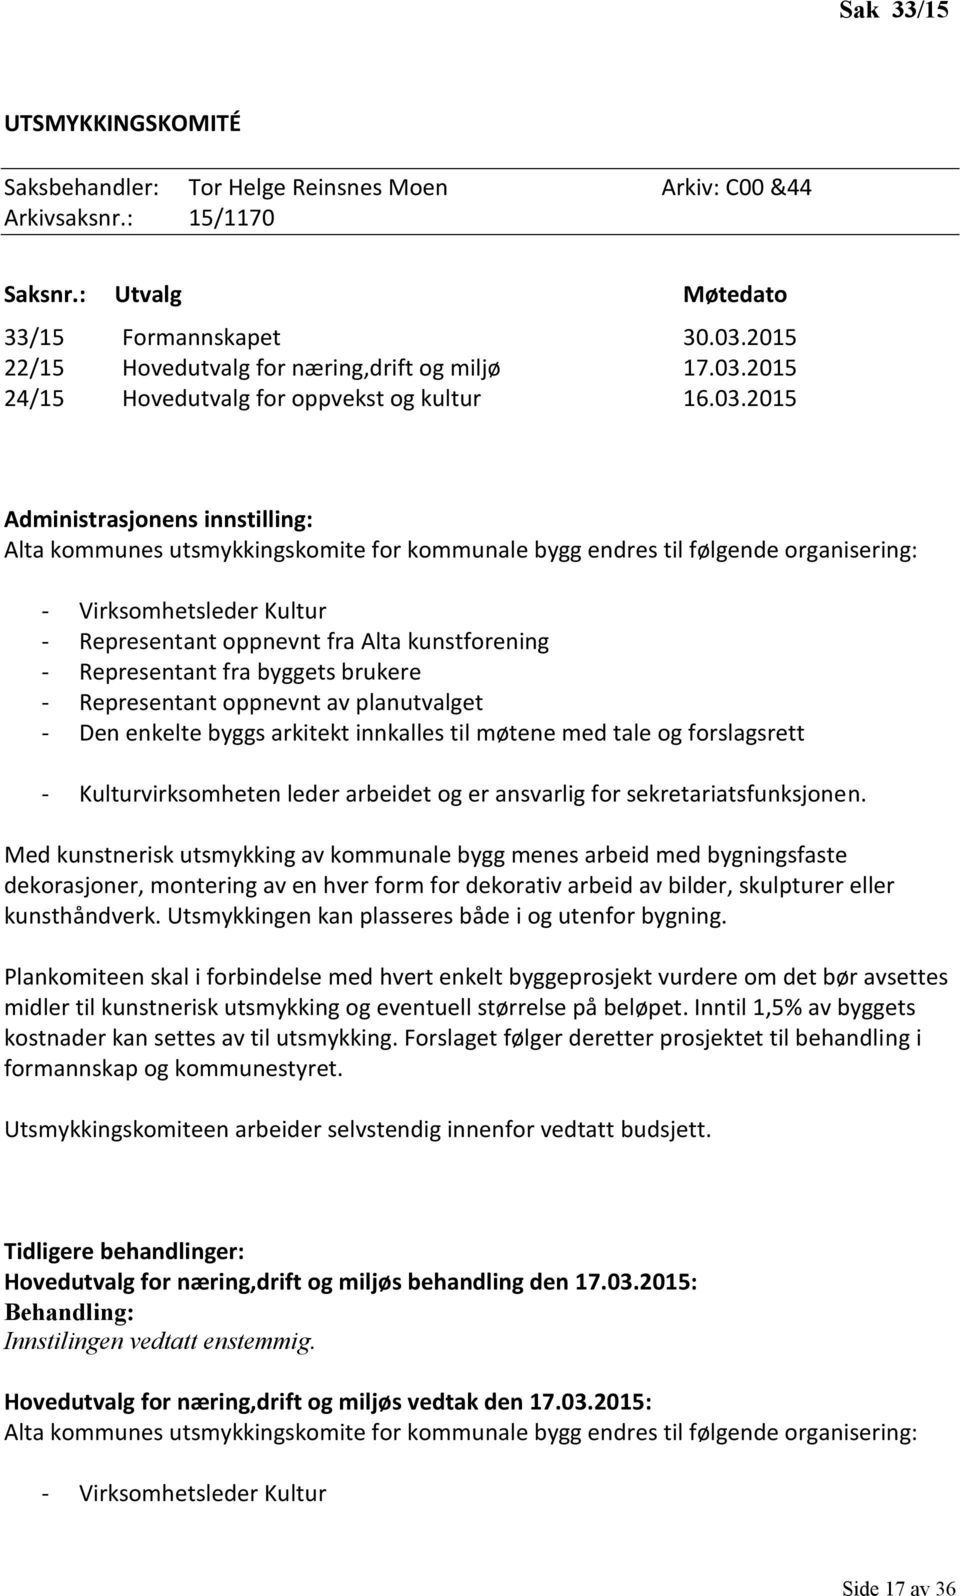 2015 24/15 Hovedutvalg for oppvekst og kultur 16.03.